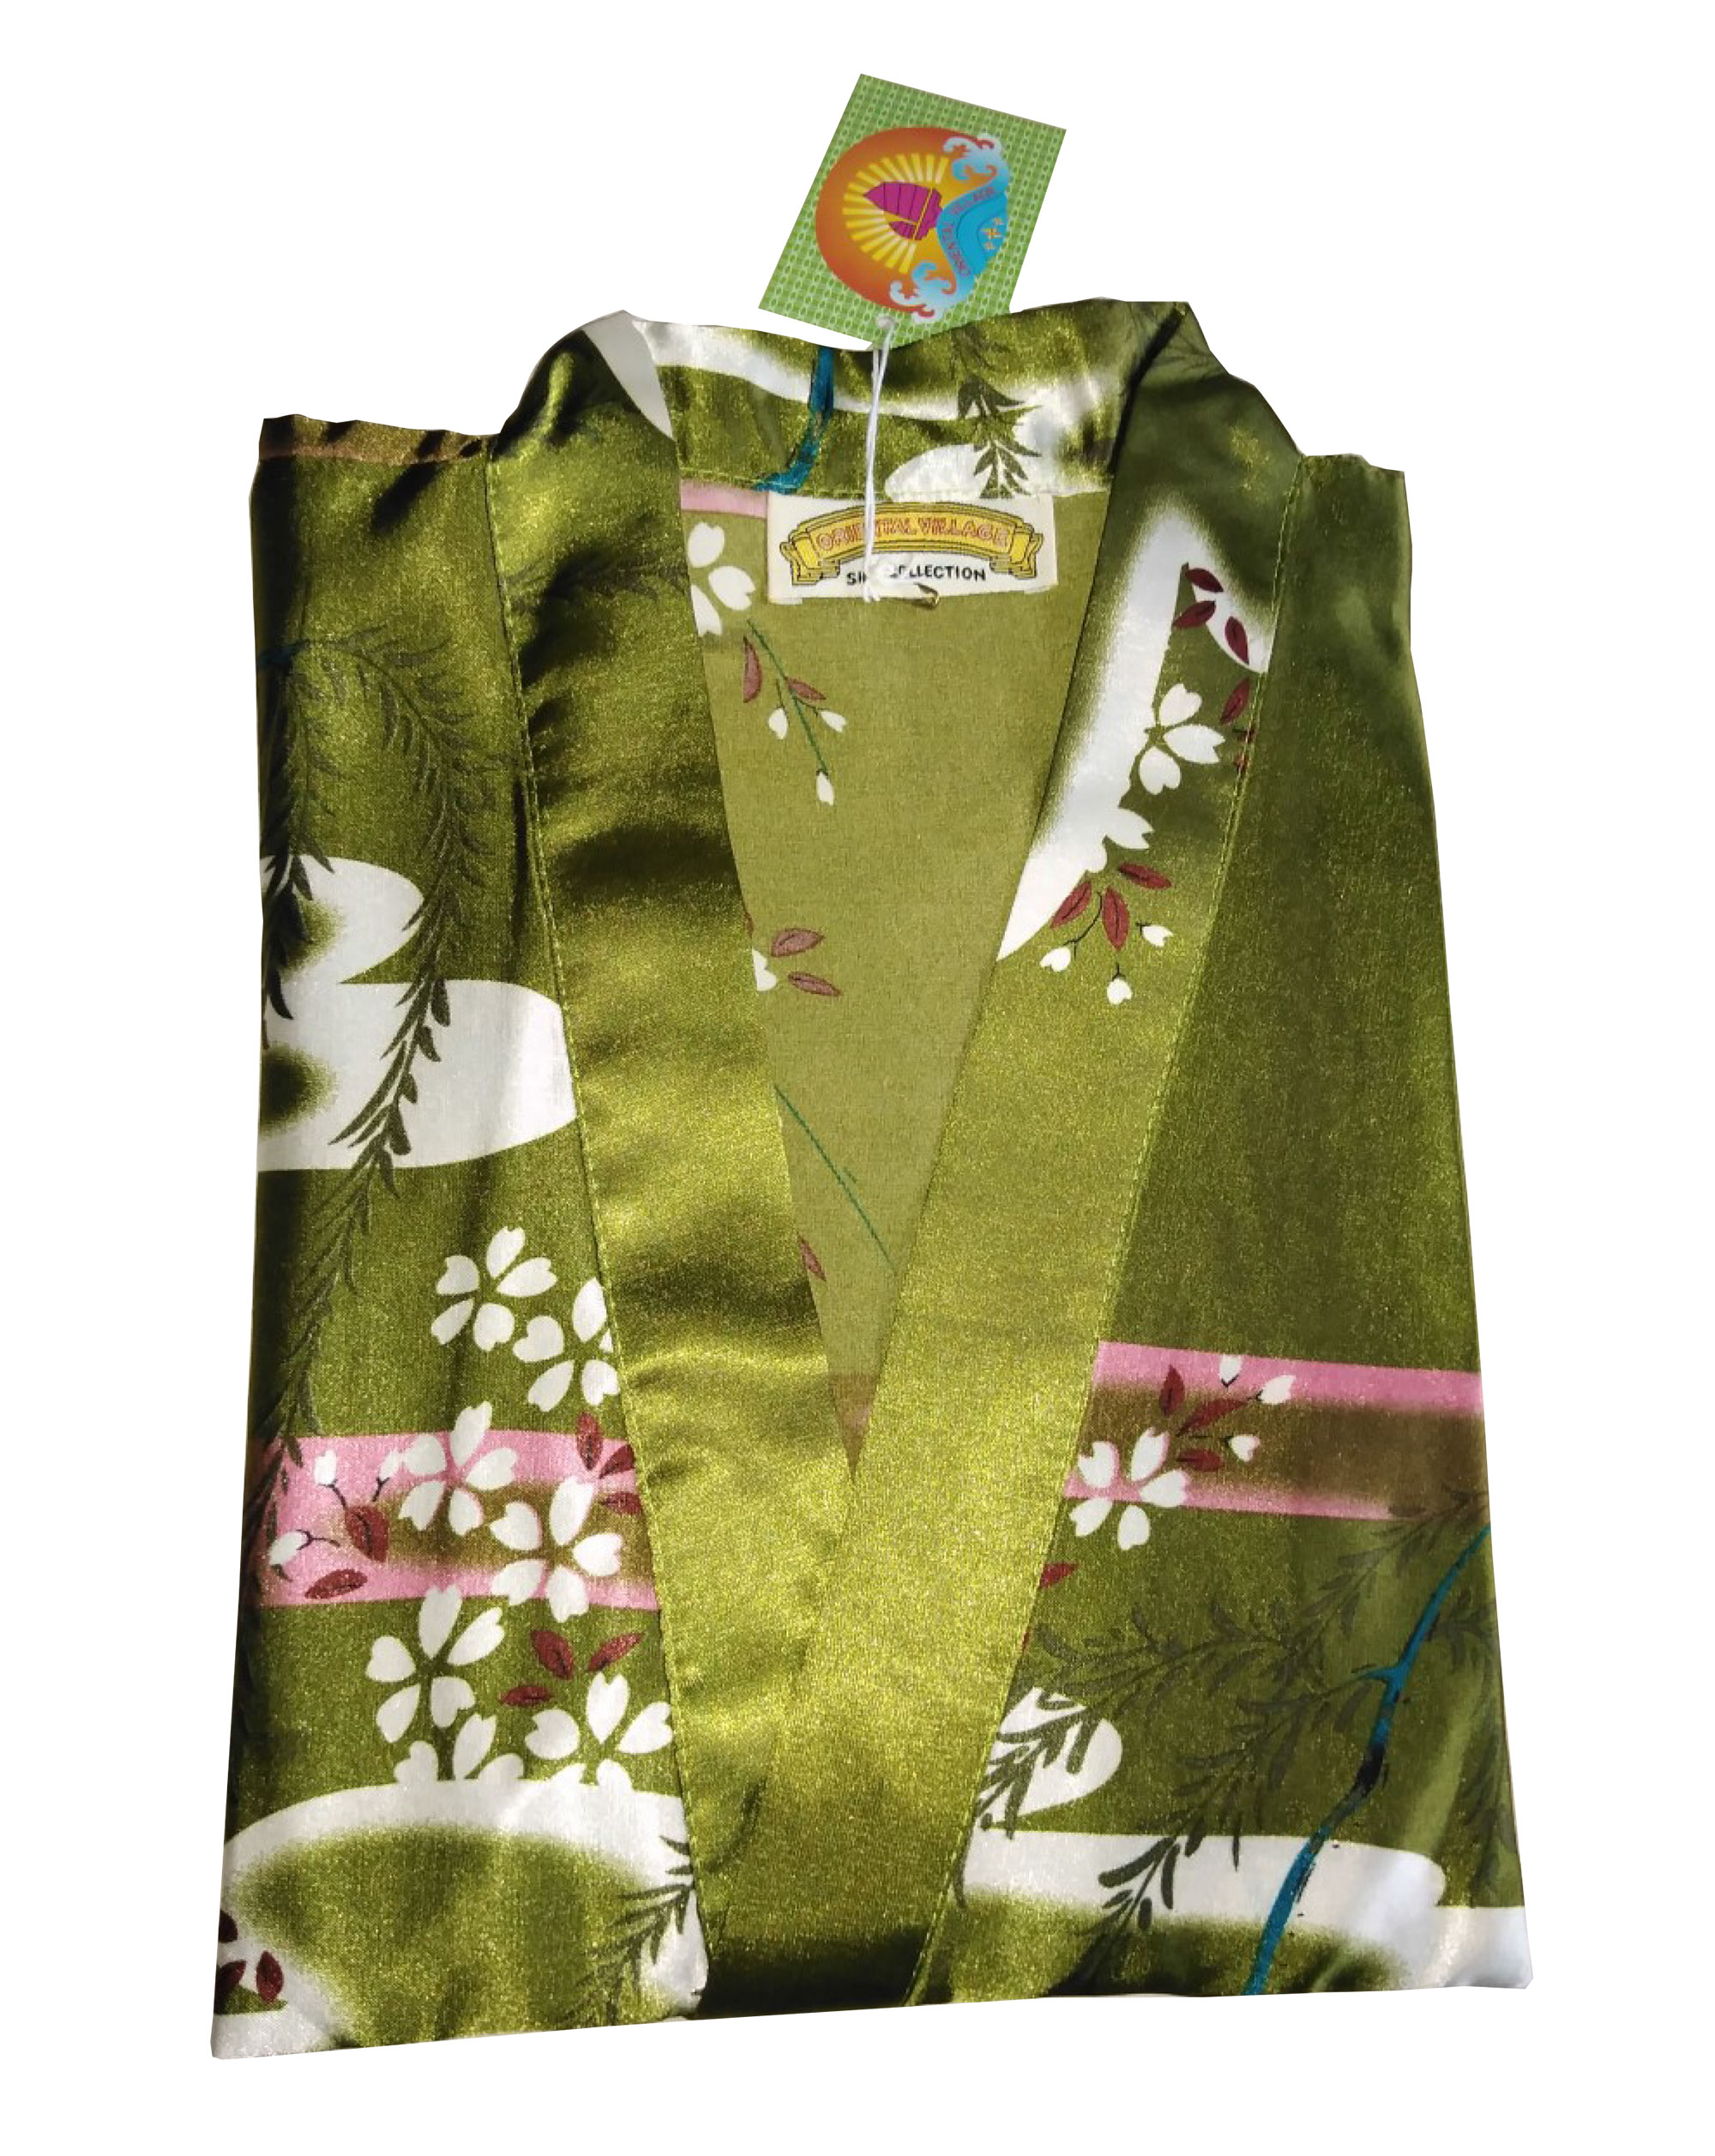 Robe สไตล์ กิโมโน ผ้า Stain ใส่นุ่มเย็นสบาย เกอิชา (ผู้หญิงญี่ปุ่น) เหมาะกับใส่เล่นอยู่บ้าน ใส่นอน เดินชายหาด ริมสระน้ำ สีเขียวมะกอก